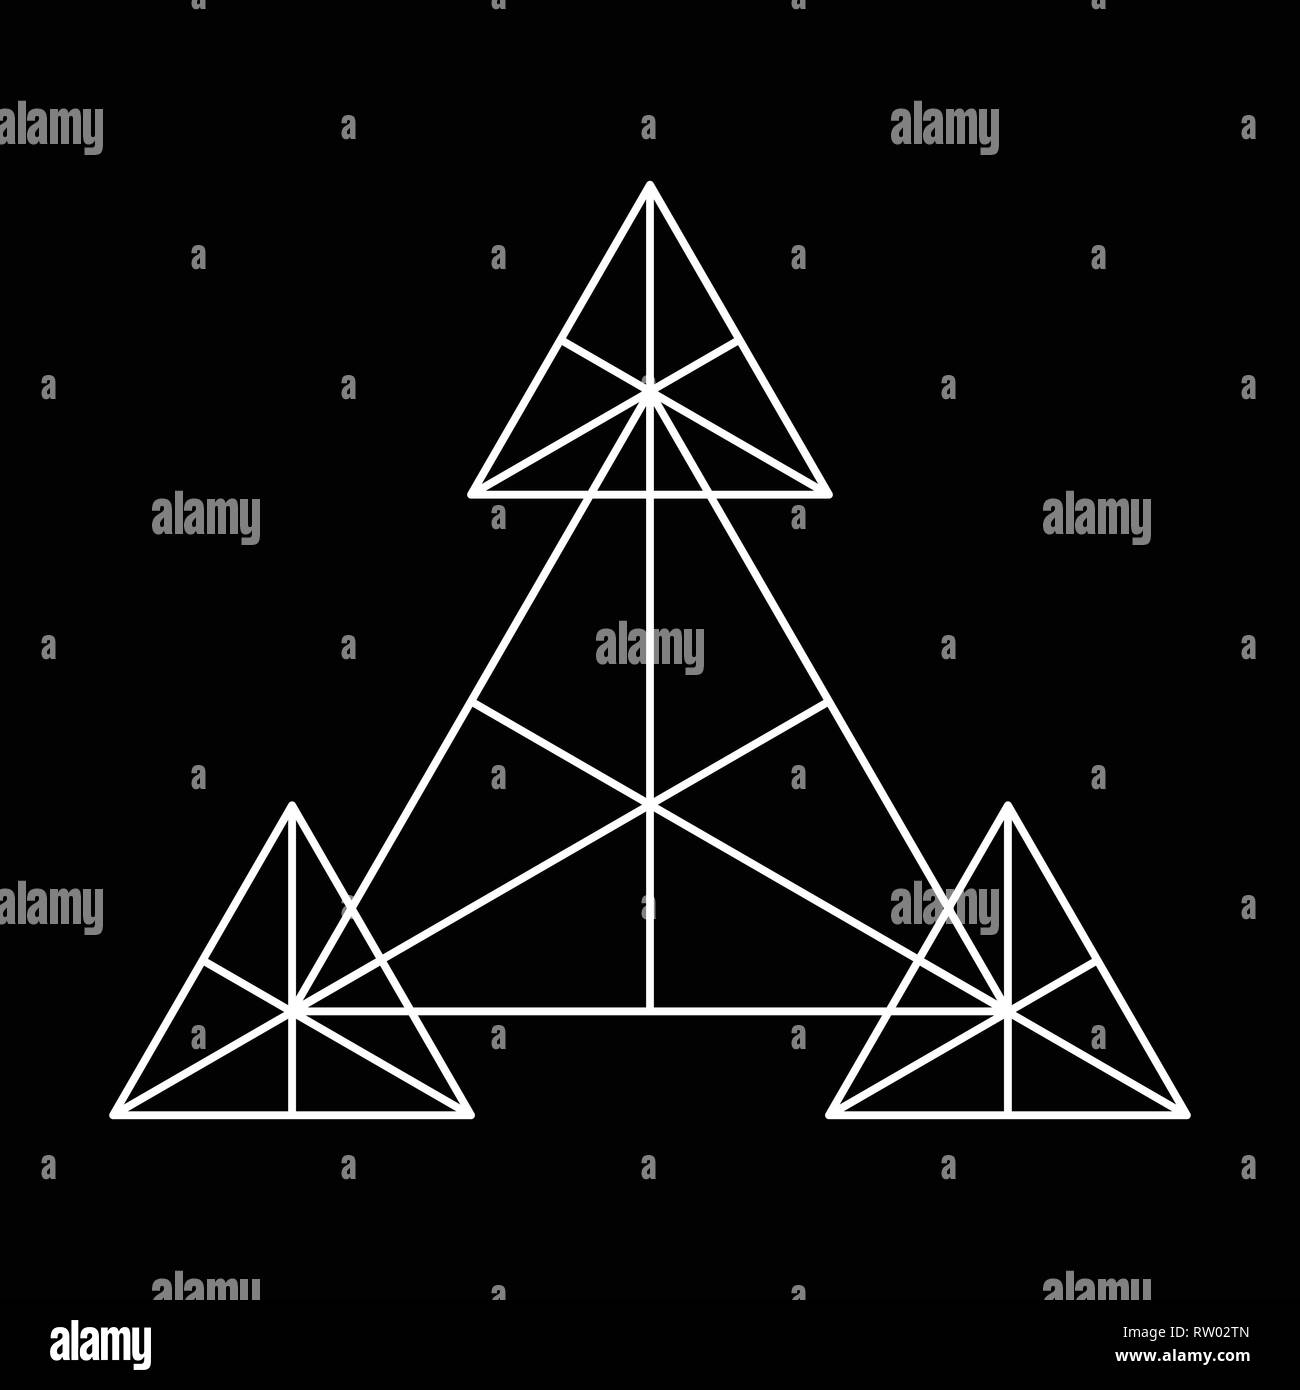 Geometria Sacra triangolo simbolo basato su elementi di e. Alchimia, religione, filosofia, astrologia e spiritualità temi per la progettazione Illustrazione Vettoriale